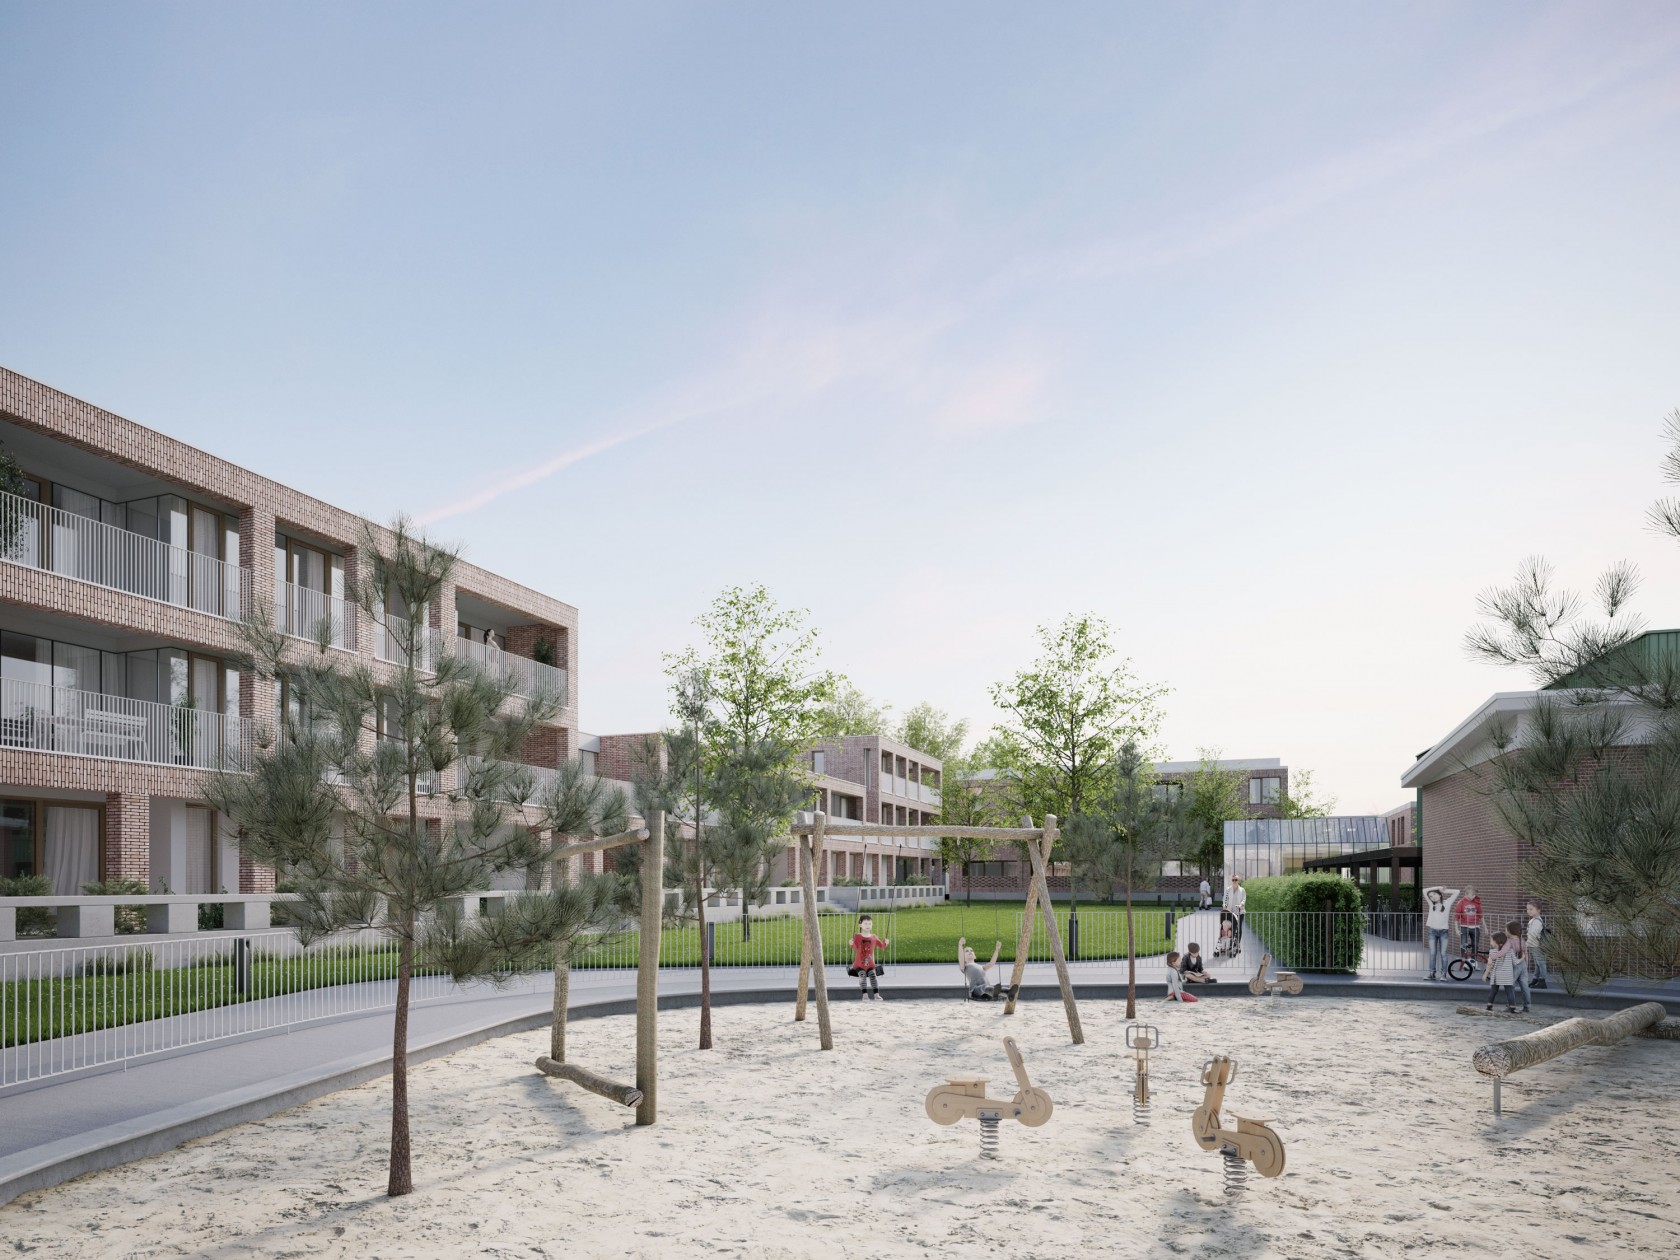 Abscis Architecten - buurtversterkend PPS-project Mudakkers in Lommel